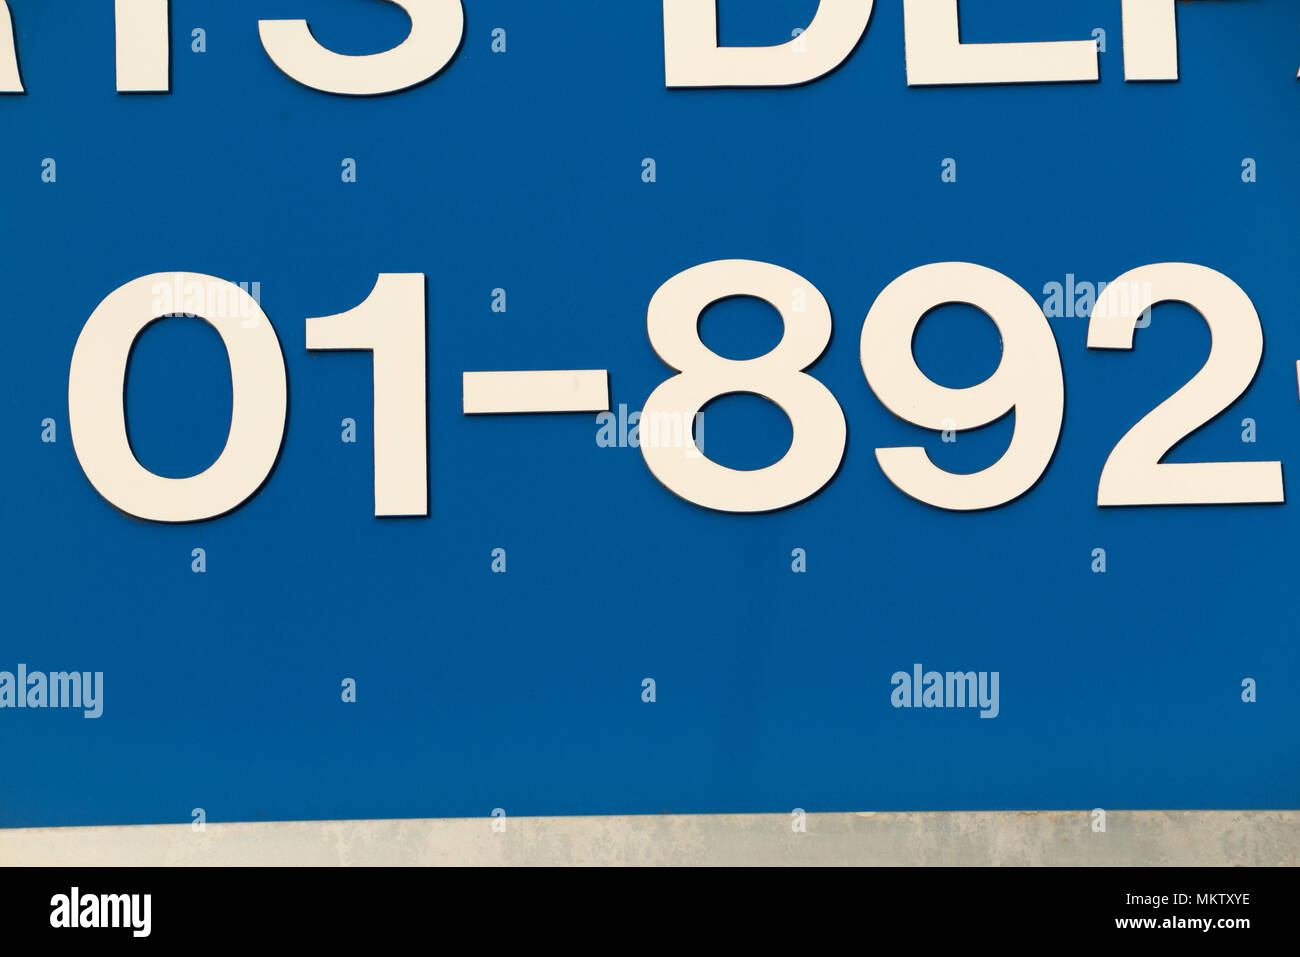 01 Code de la région de London numéro de téléphone, qui a été remplacé il y  a plusieurs années, toujours sur l'affichage à l'avant d'une entreprise à  Twickenham. Londres. UK. (96 Photo